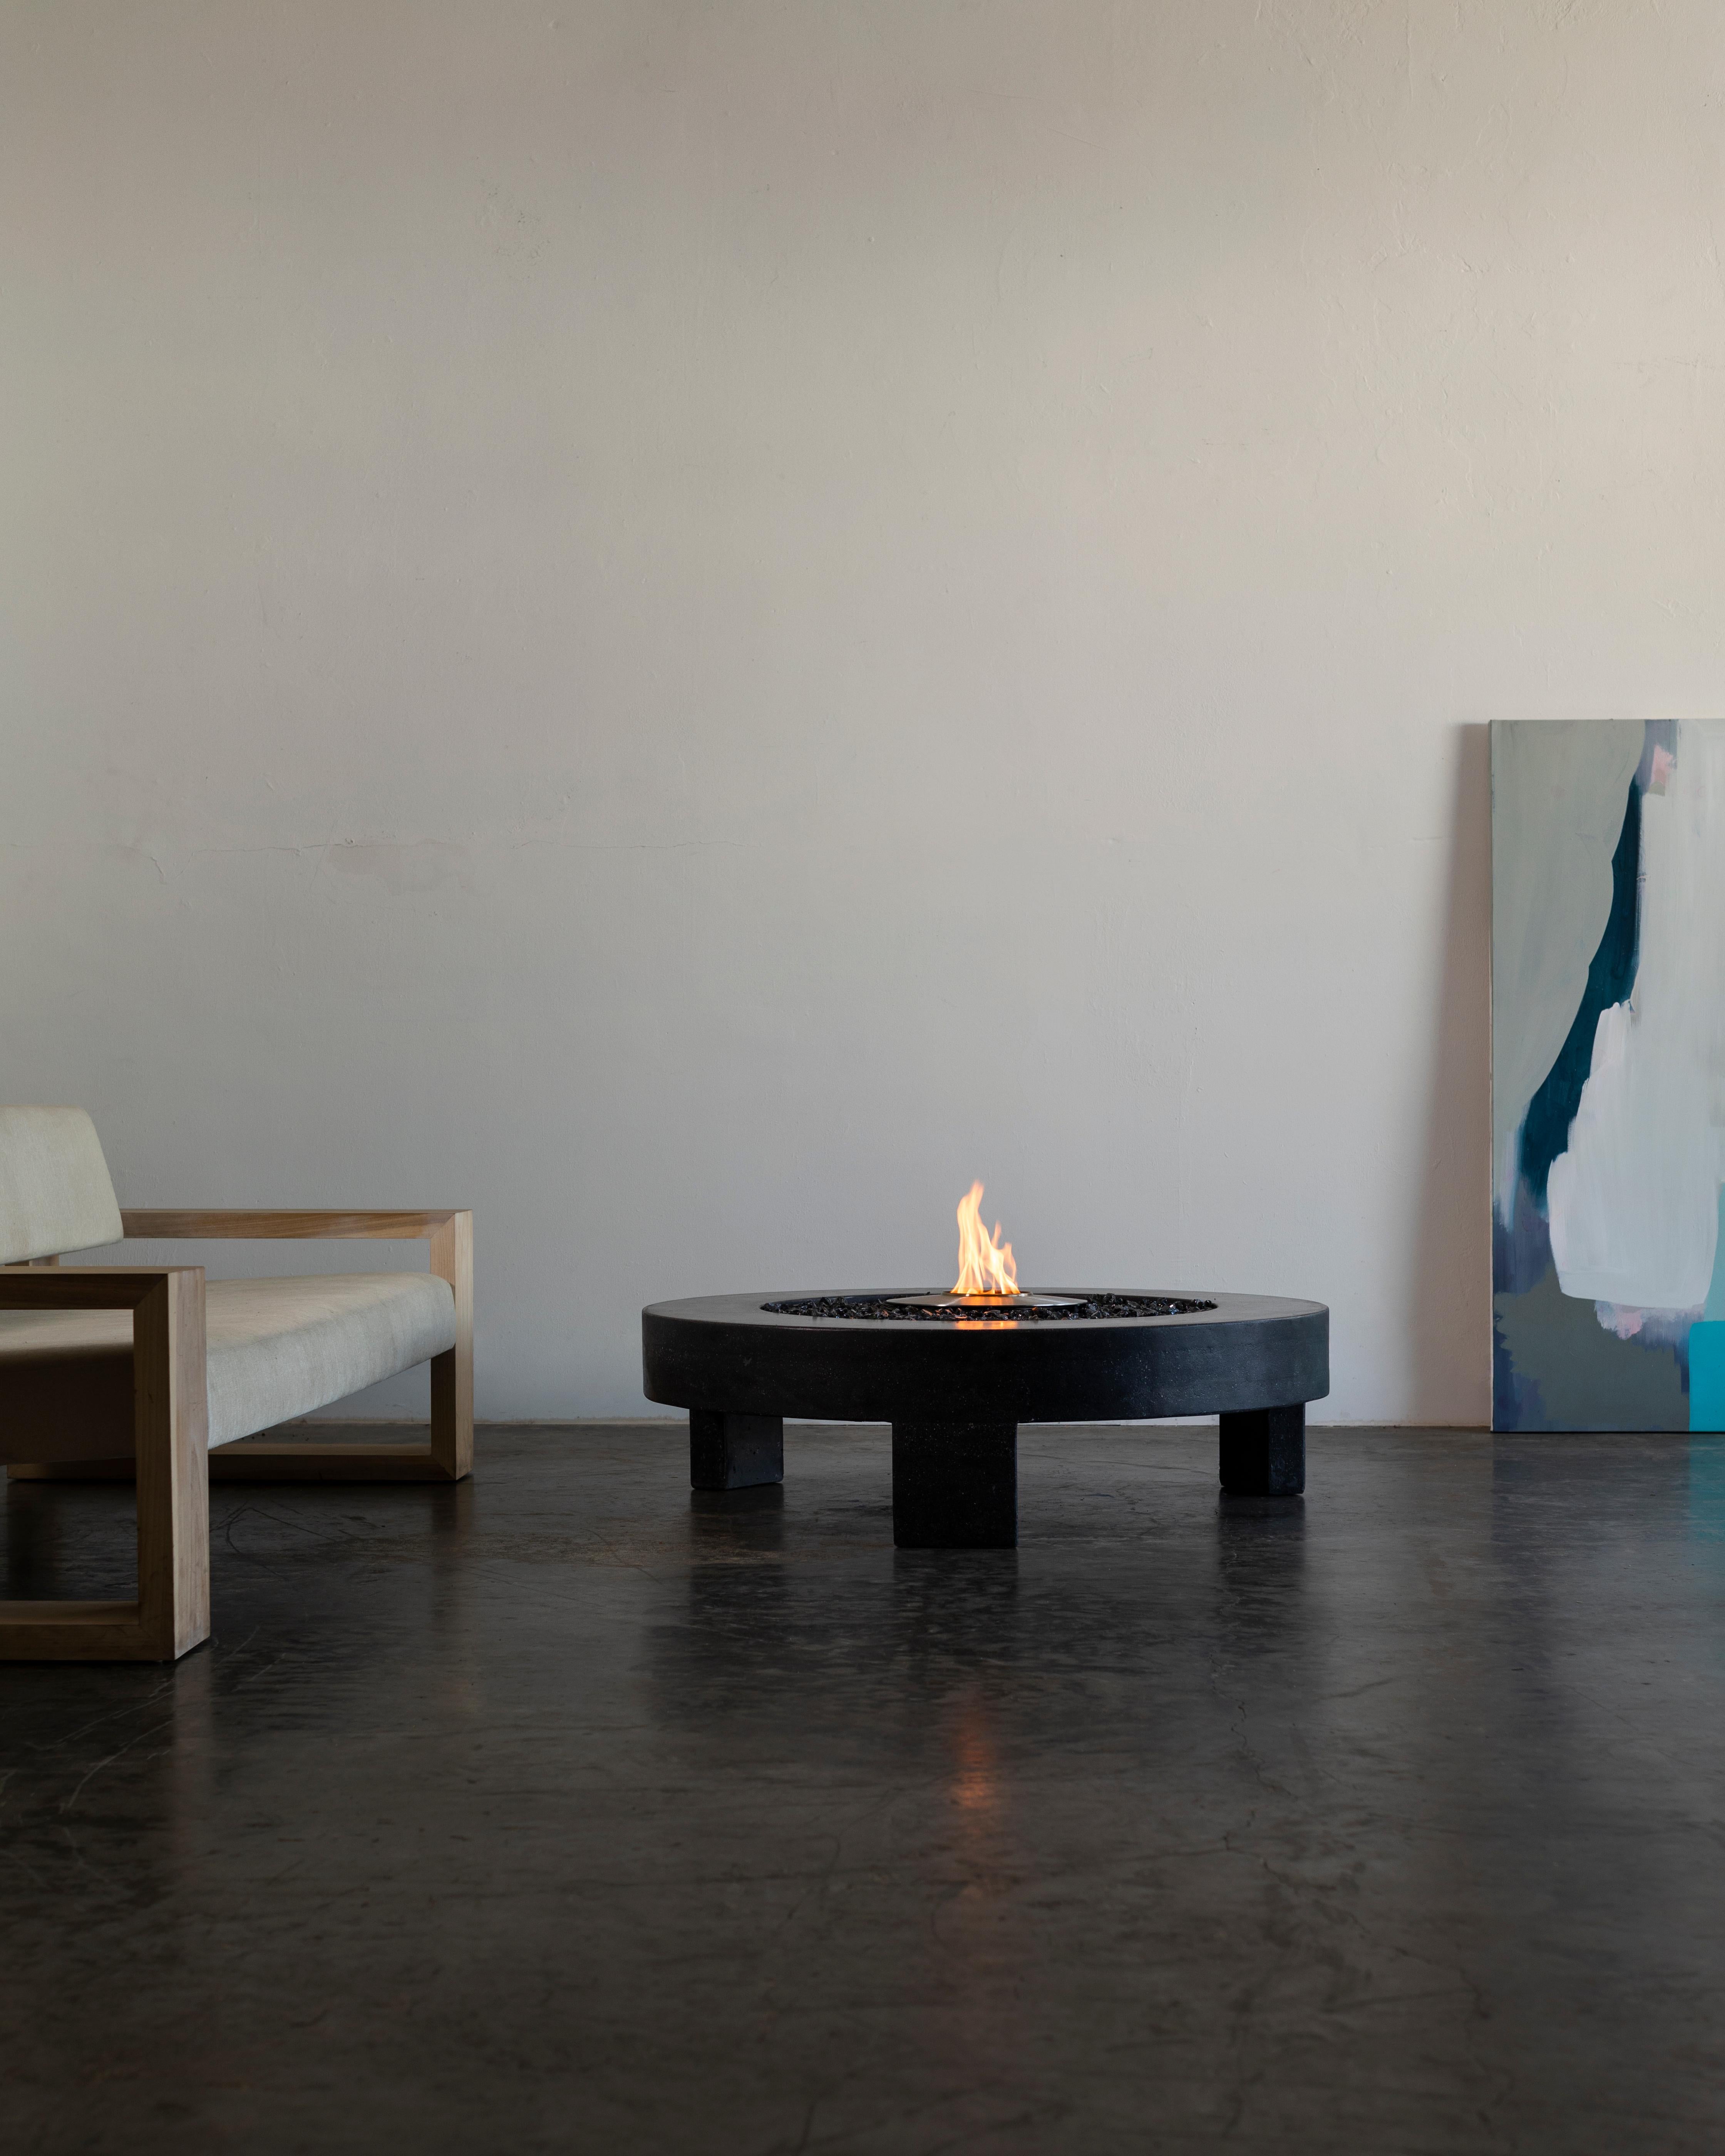 Der 3-Legged Concrete Fire Table von James de Wulf ist der zweite Entwurf in einer Serie von drei verschiedenen Stilen. Das einzigartige und unerwartete Design mit drei Beinen ist so gestaltet, dass es aus verschiedenen Blickwinkeln asymmetrisch